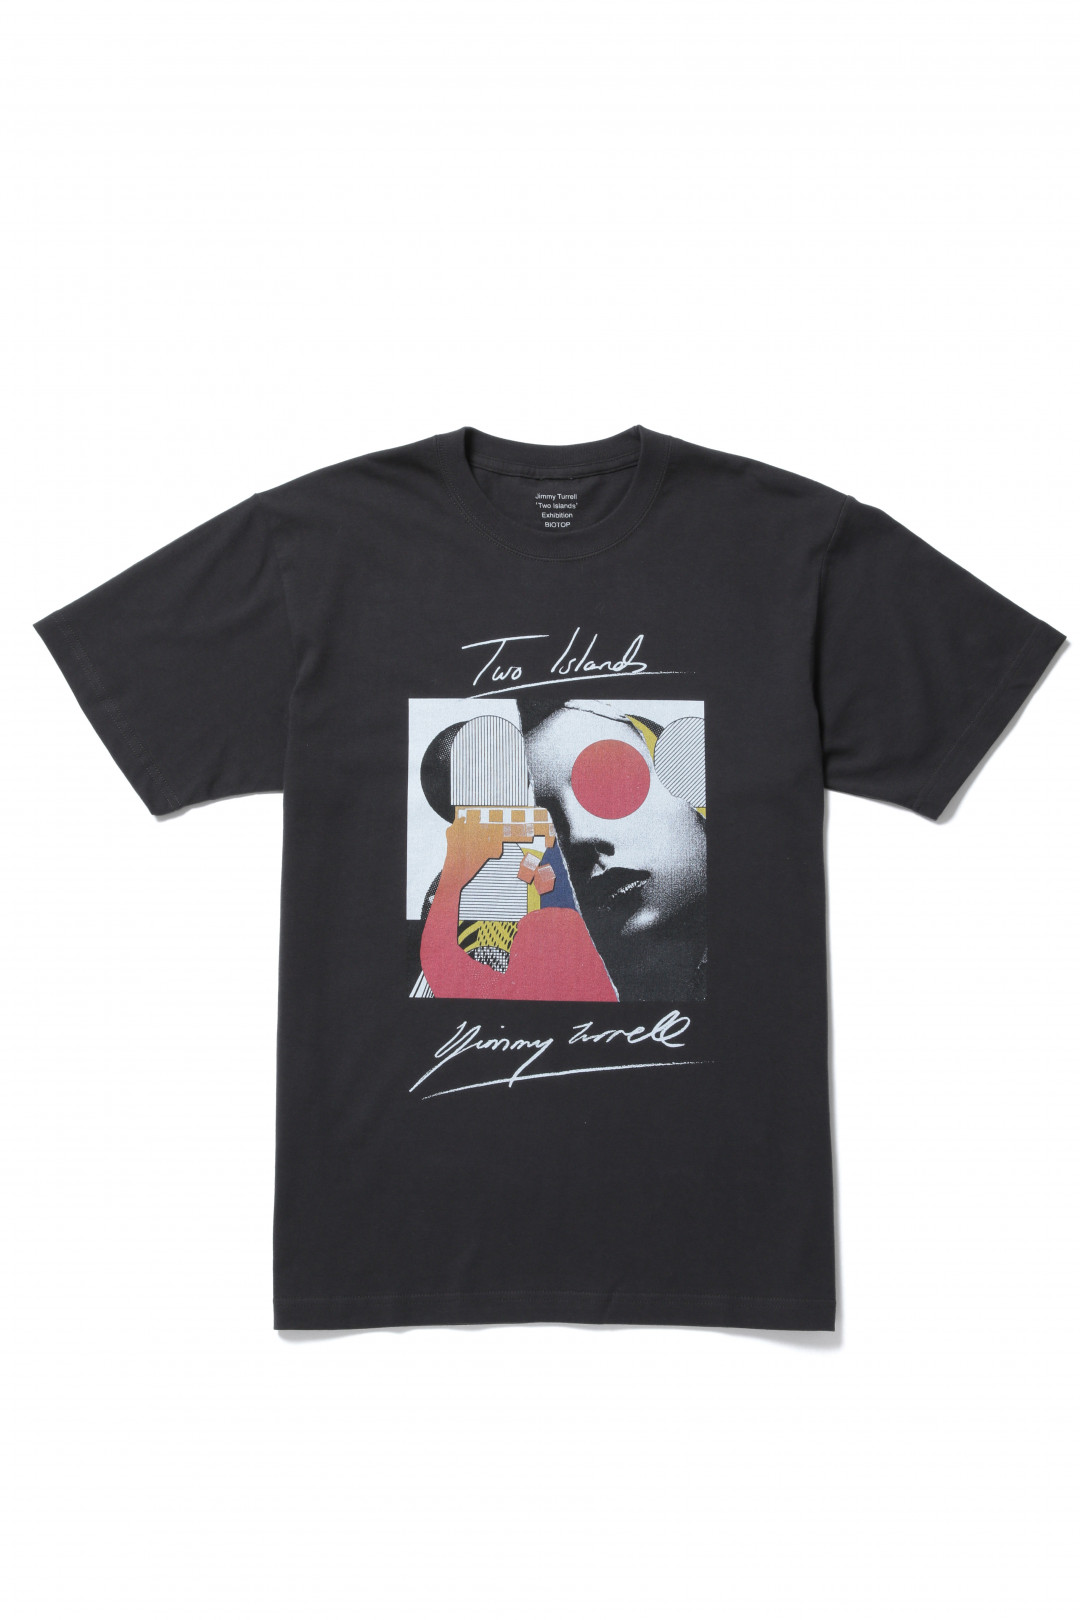 Collaboration T-shirts（7,500円）